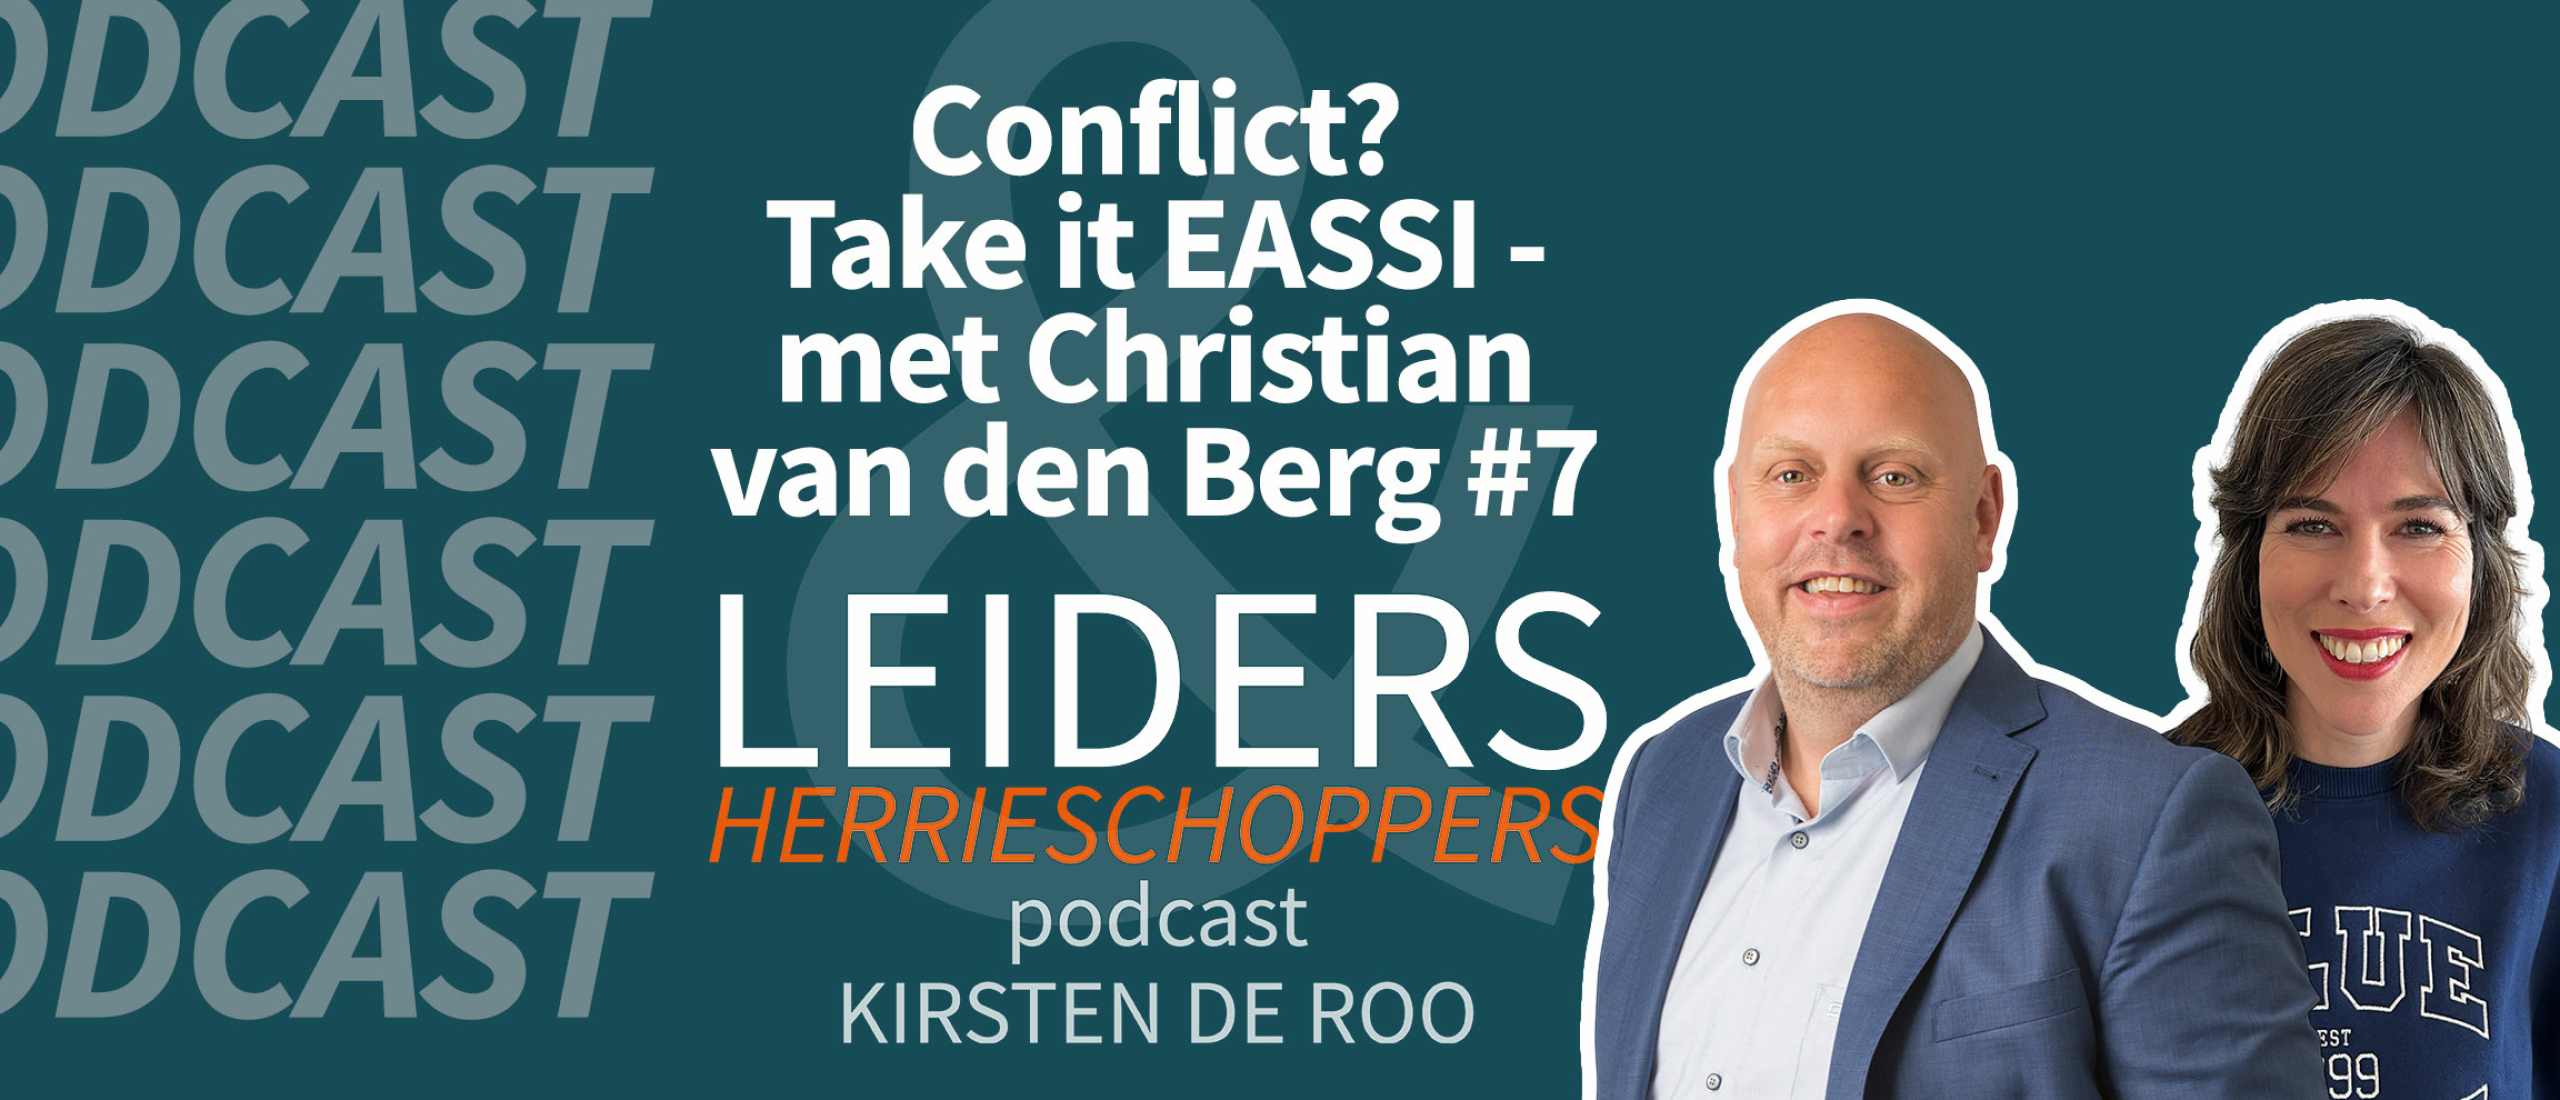 Conflict? Take it EASSI - met Christian van den Berg #7